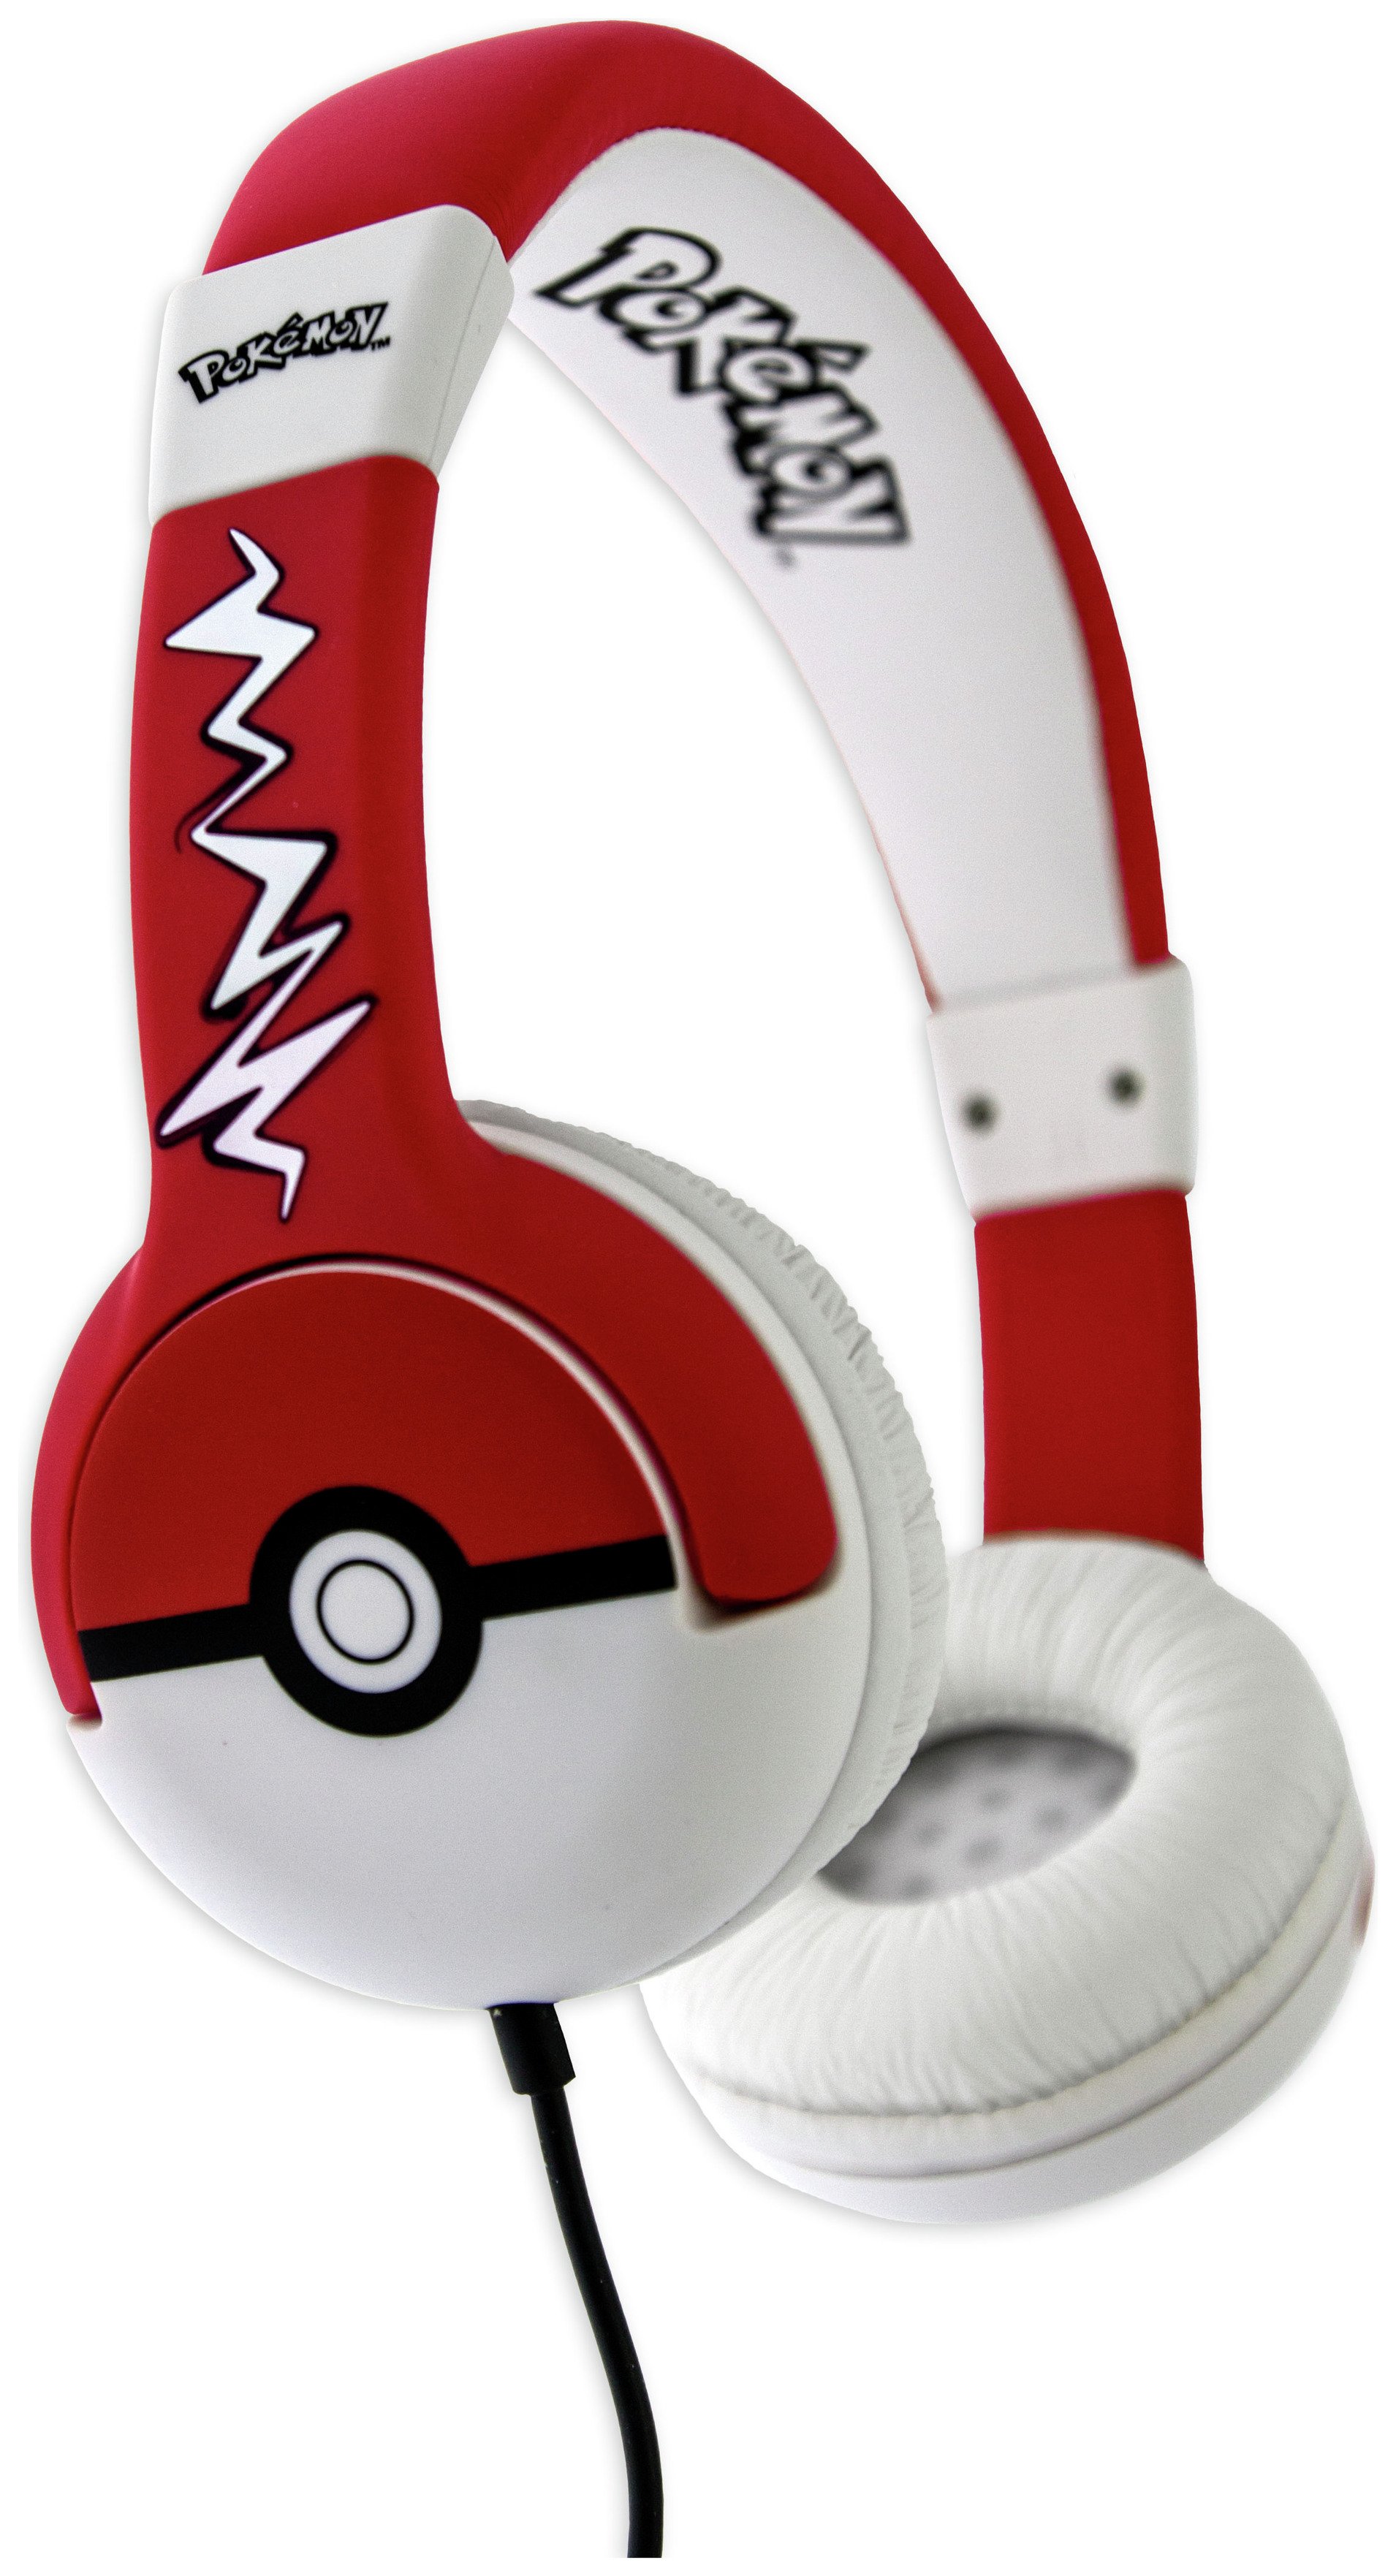 Pokemon Pokeball Kids On-Ear Headphones Review